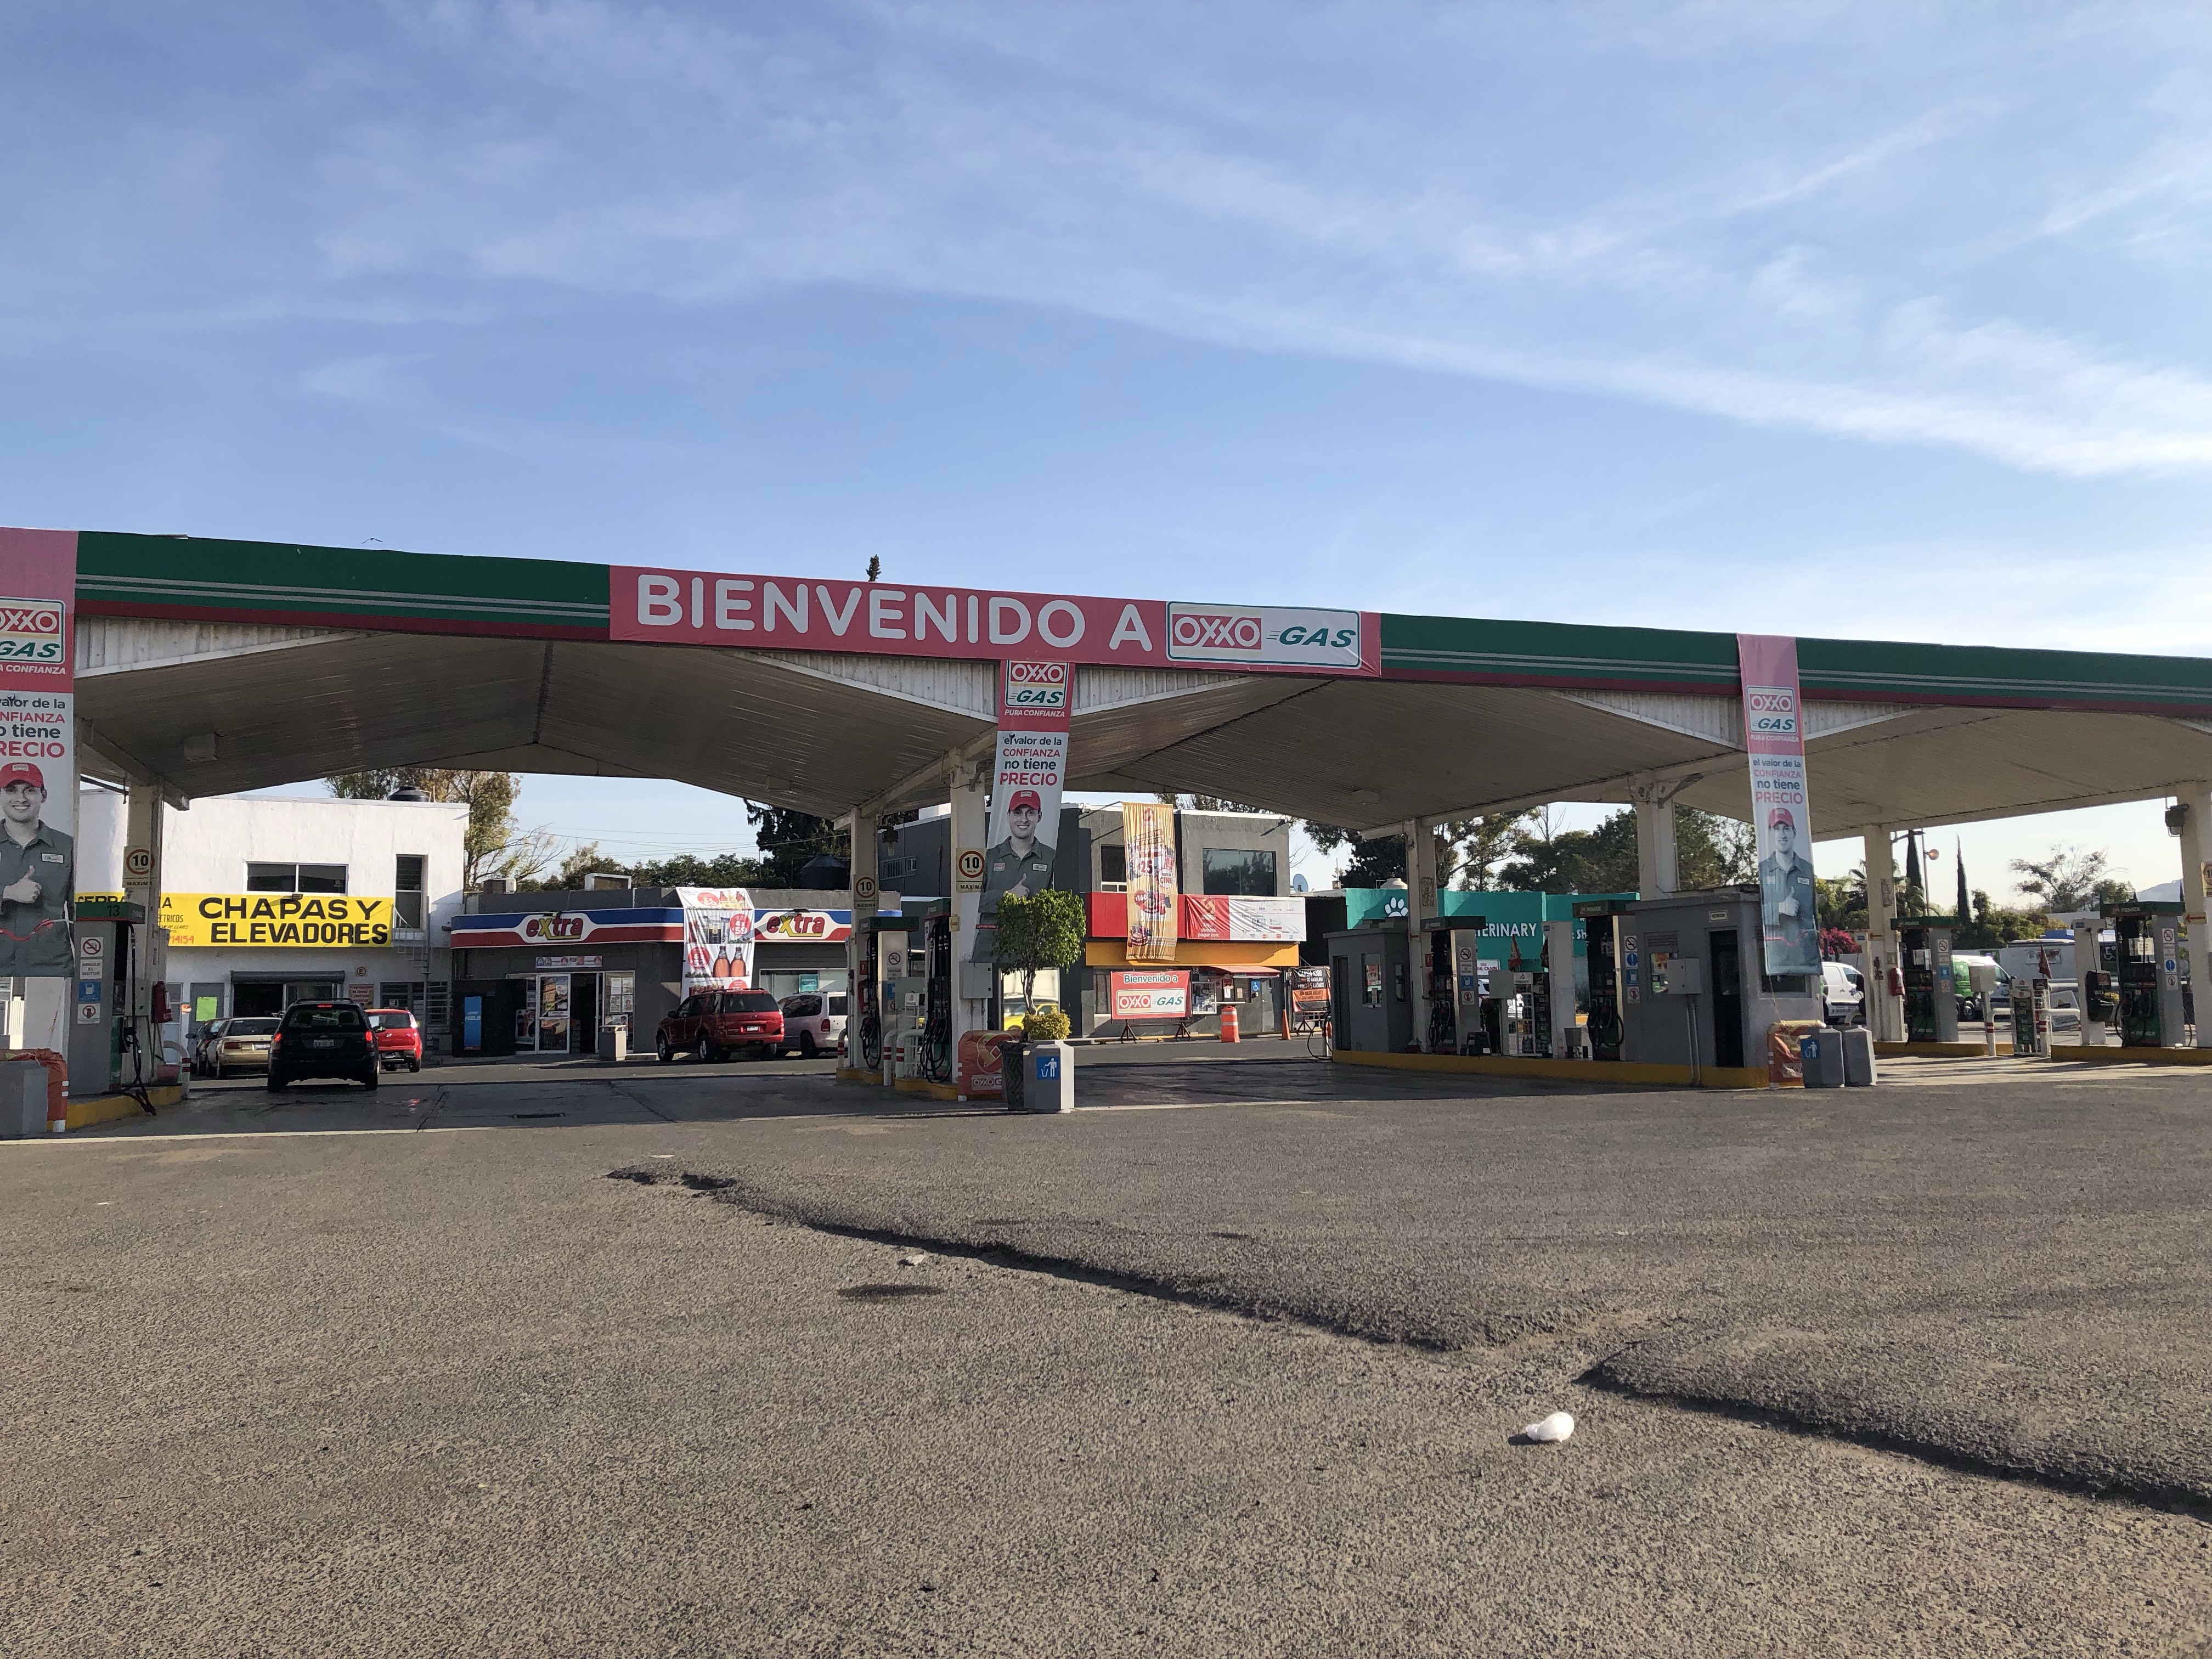  Suman 68 las estaciones sin gasolina en Querétaro